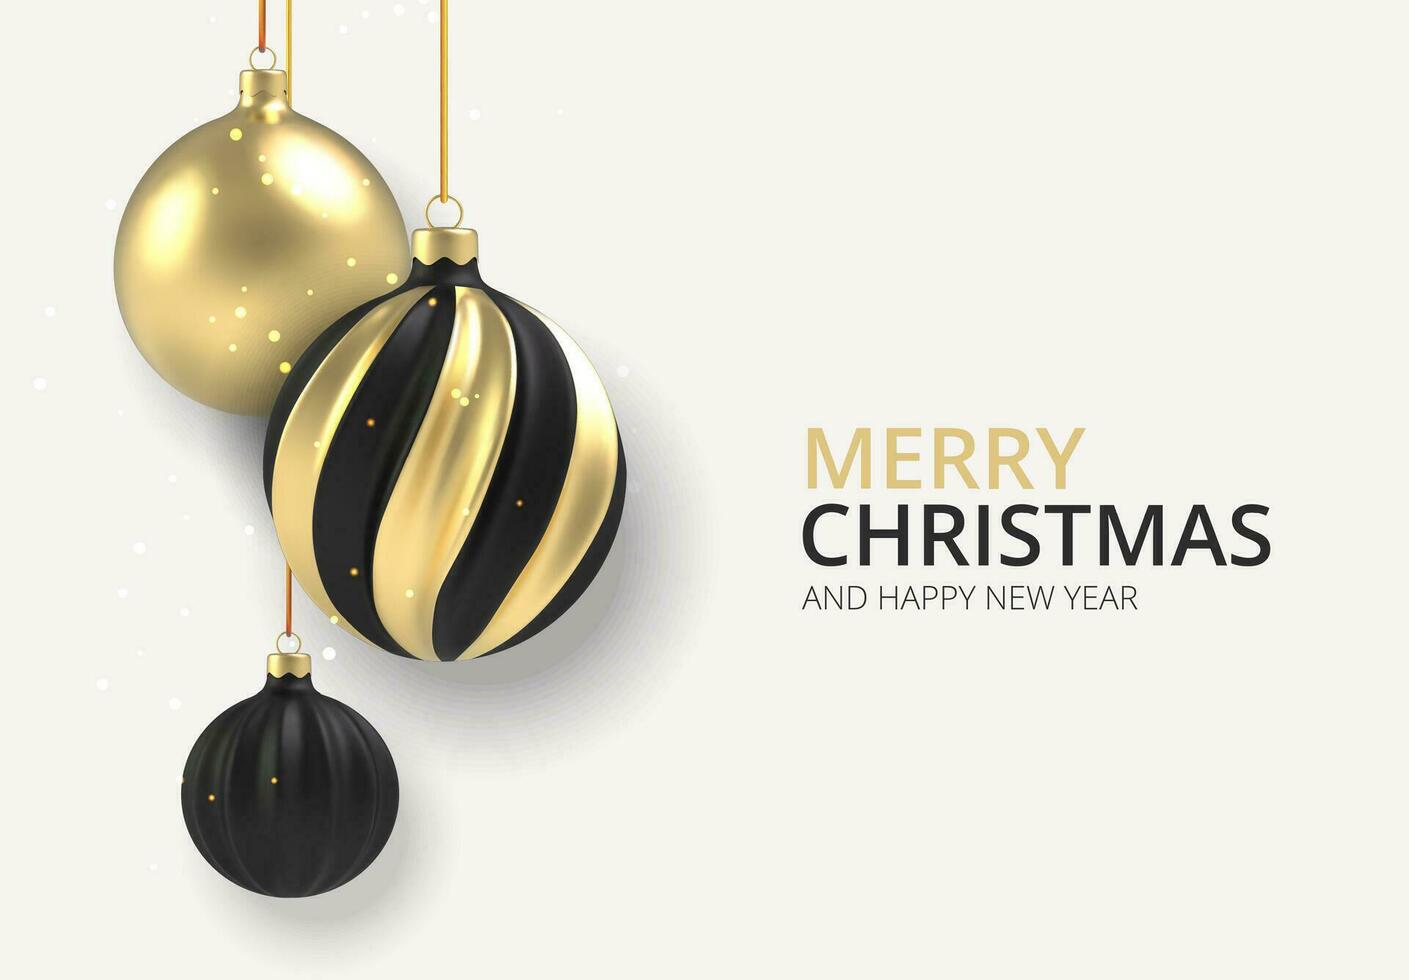 xmas bakgrund guld och svart jul boll i realistisk stil på vit bakgrund. vektor illustration.